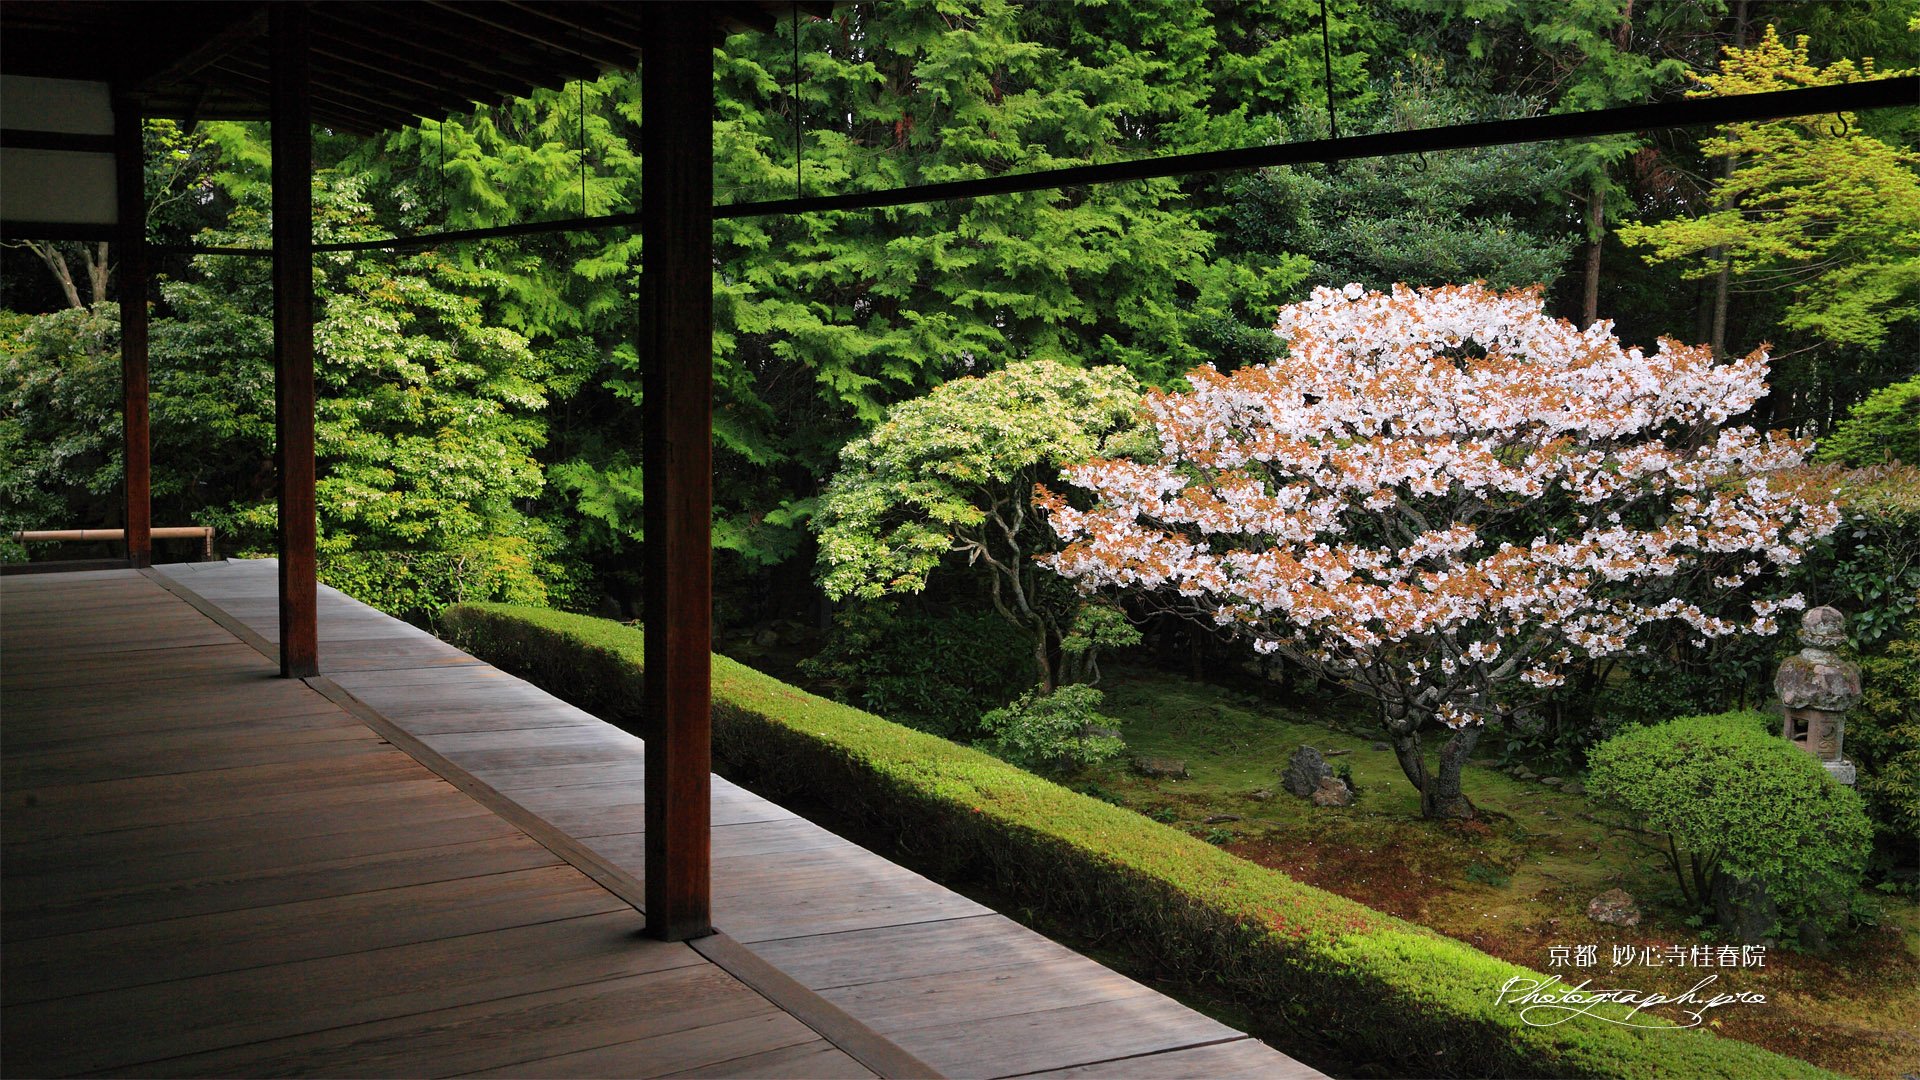 Забронировать столик в японском саду. Сад Цукияма в Японии. Тропа философа Киото. Японский сад на столе. Сад камней в Японии.